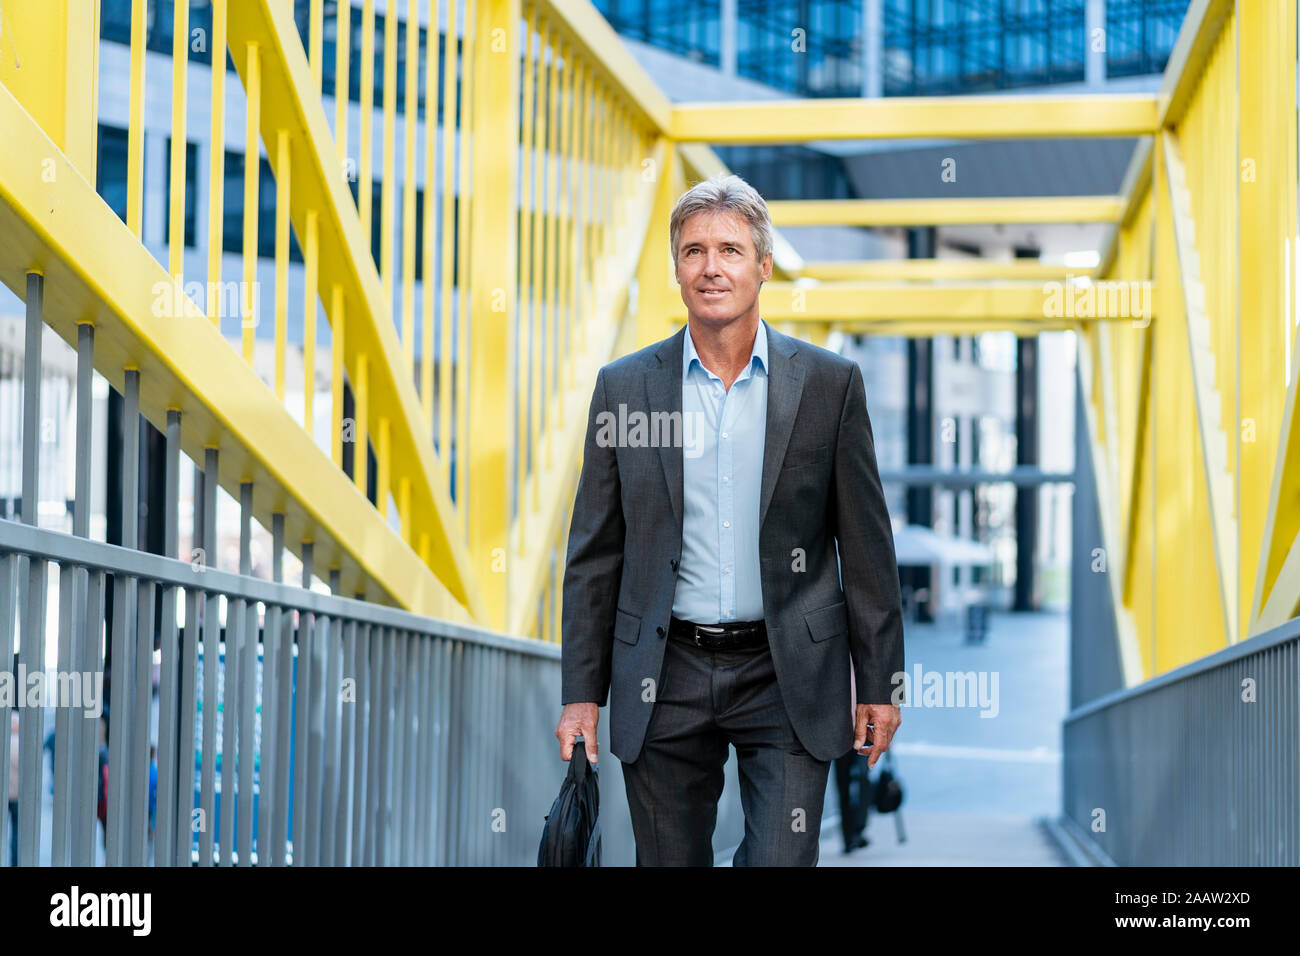 Mature businessman marche sur un pont Banque D'Images